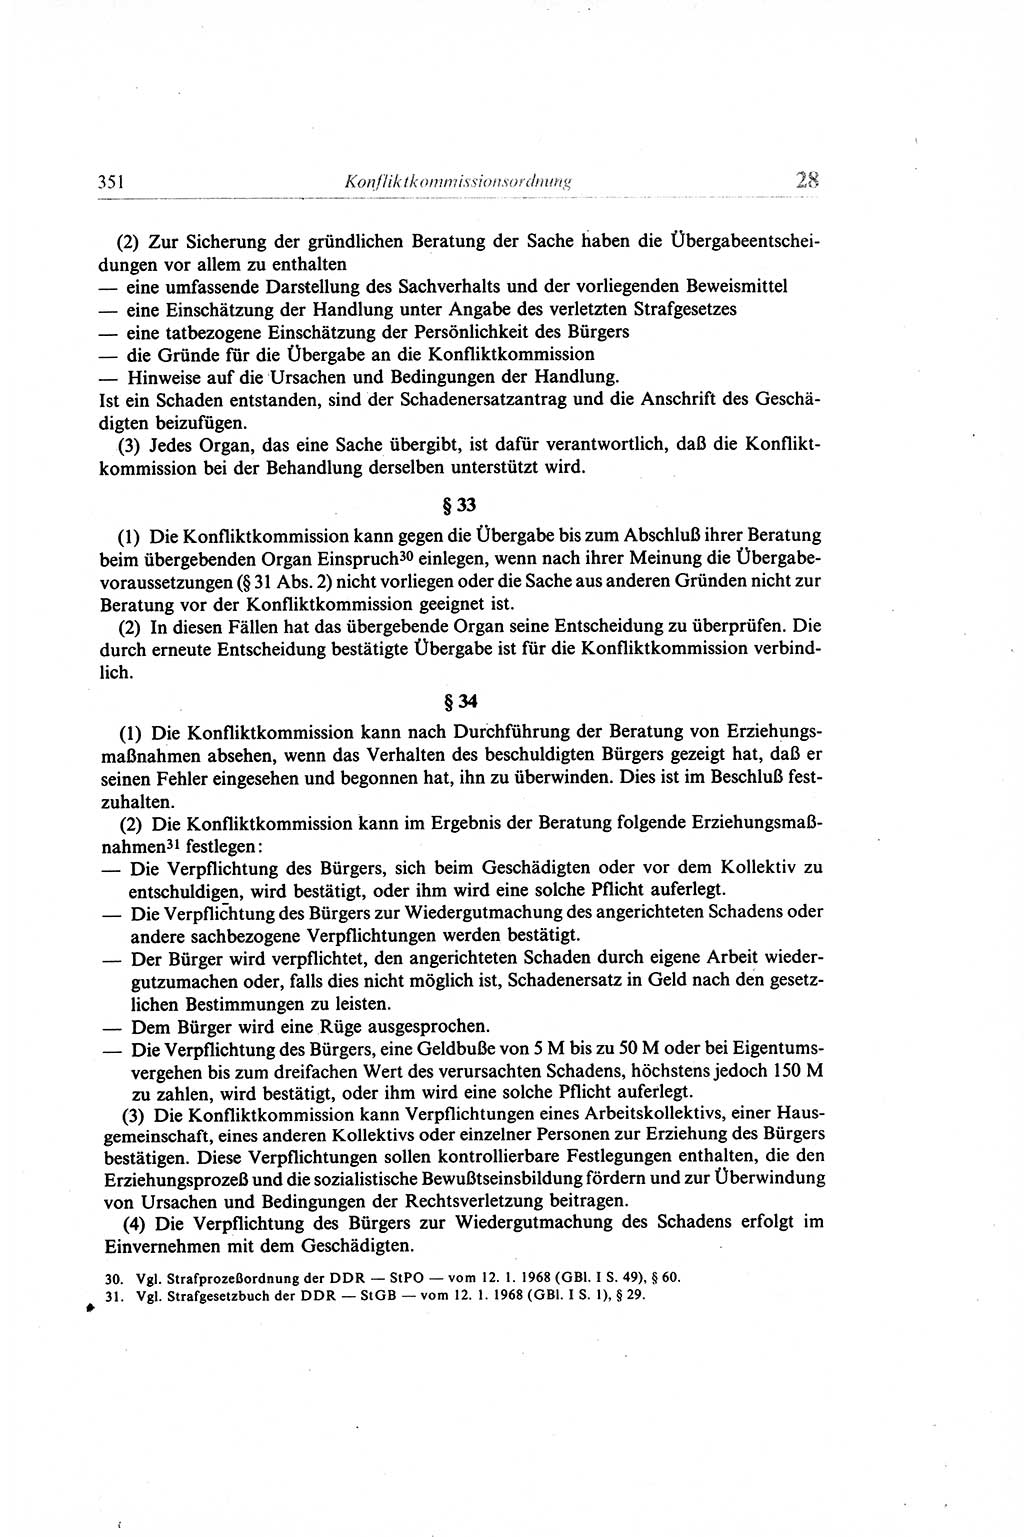 Gesetzbuch der Arbeit (GBA) und andere ausgewählte rechtliche Bestimmungen [Deutsche Demokratische Republik (DDR)] 1968, Seite 351 (GBA DDR 1968, S. 351)